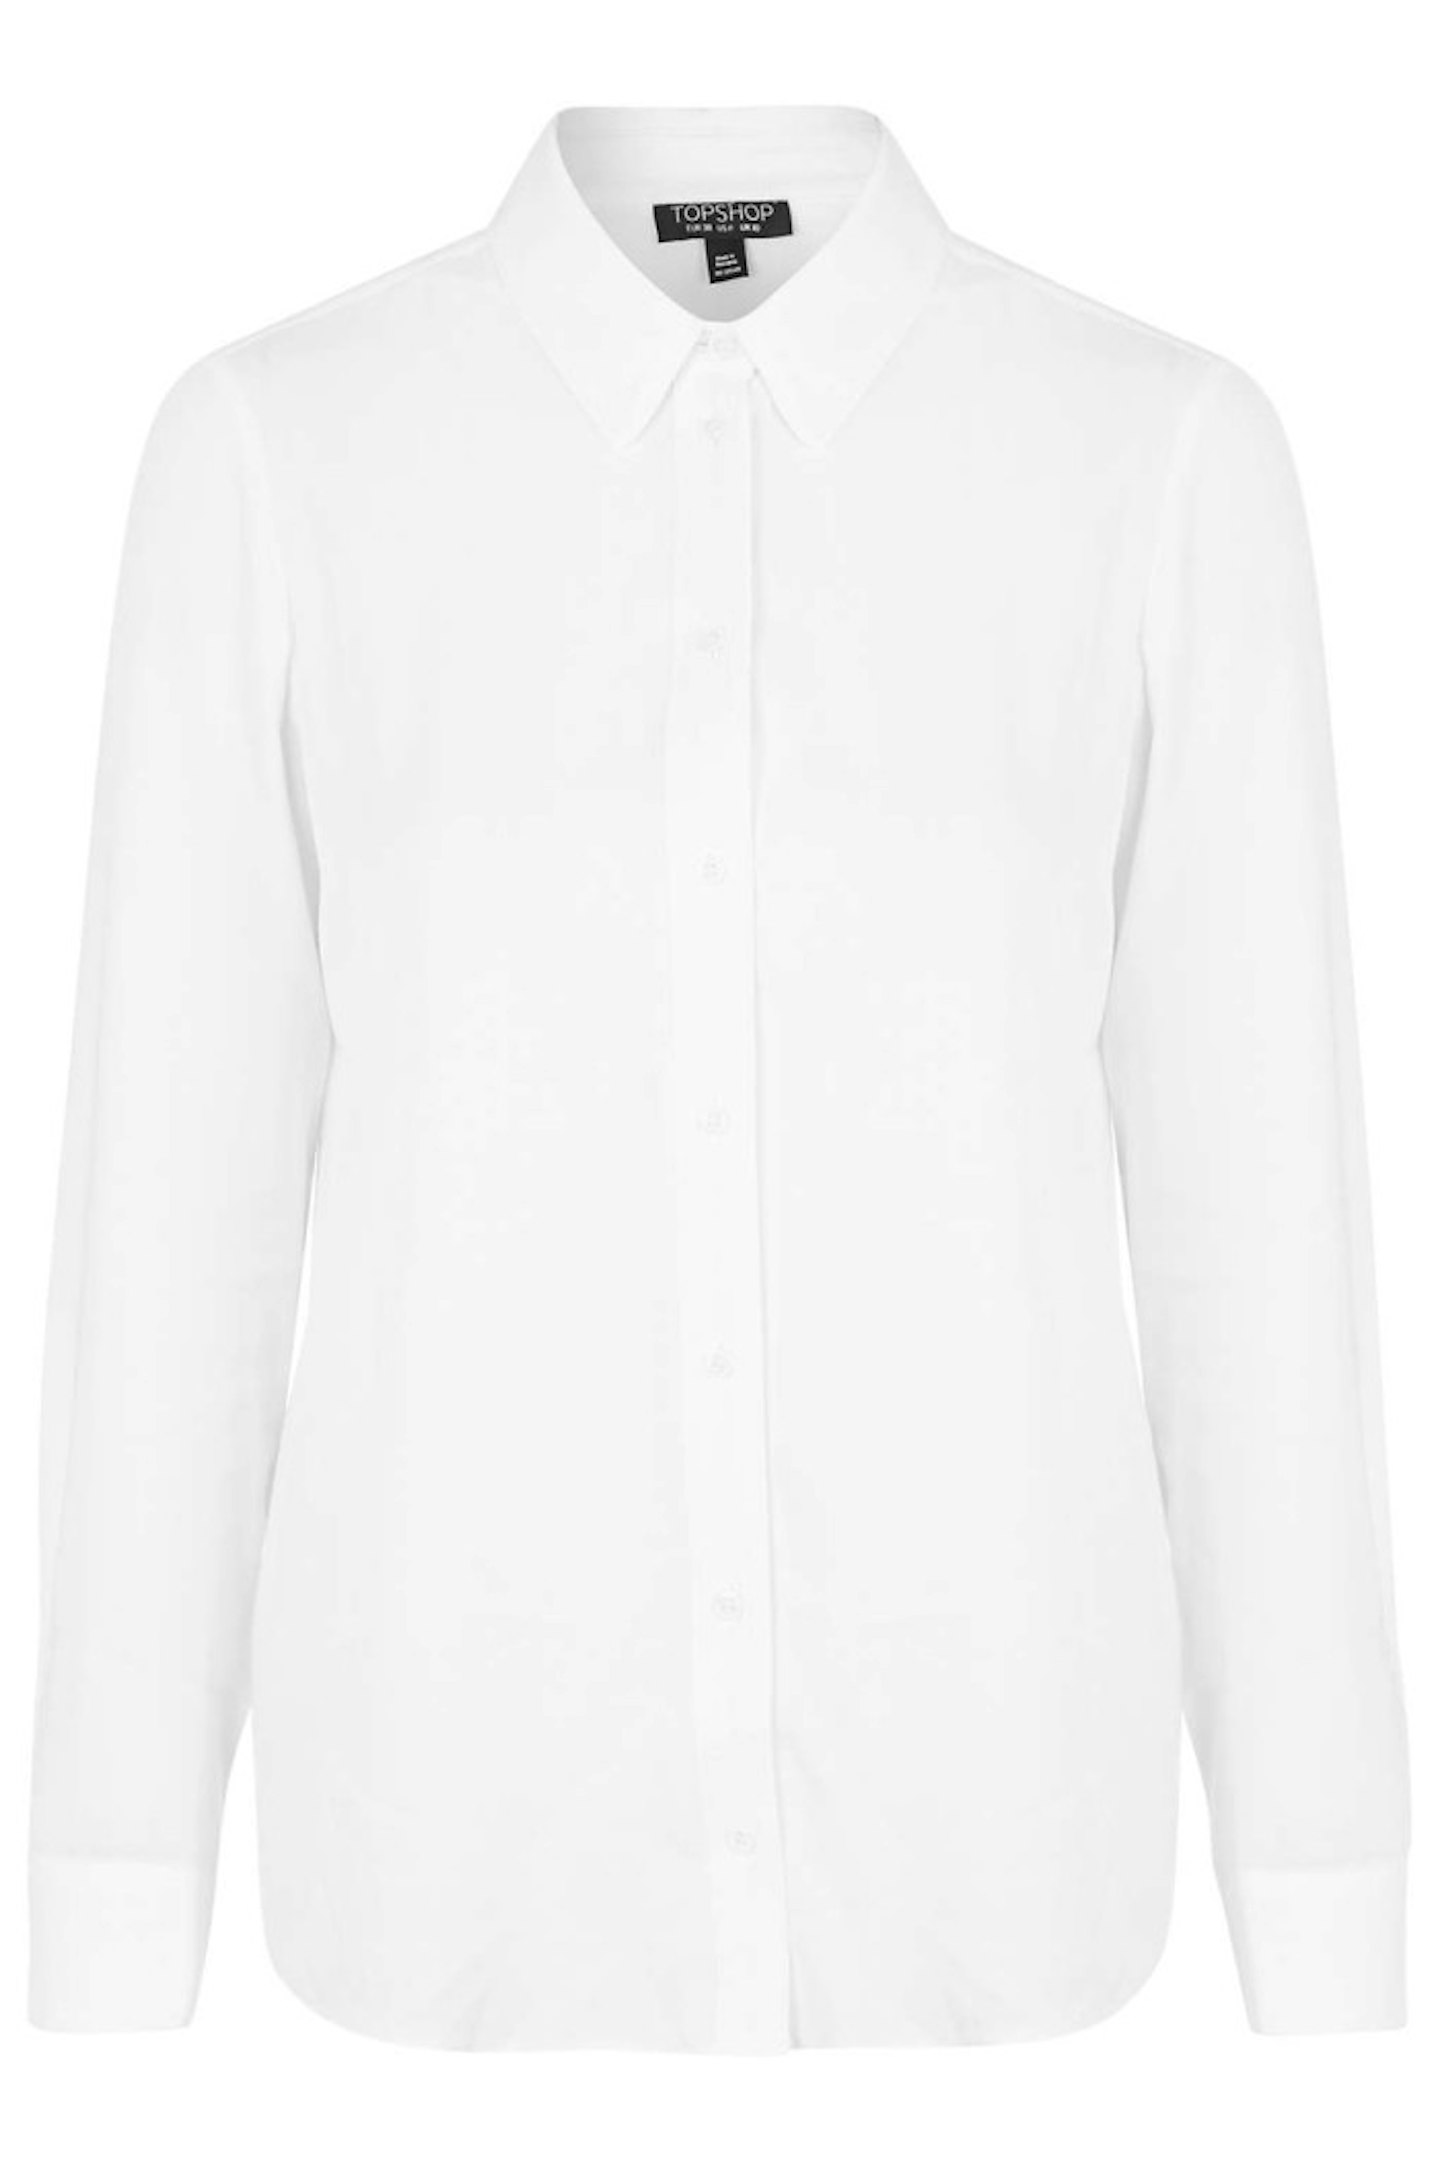 Topshop 70s High Collar Shirt, £30.00